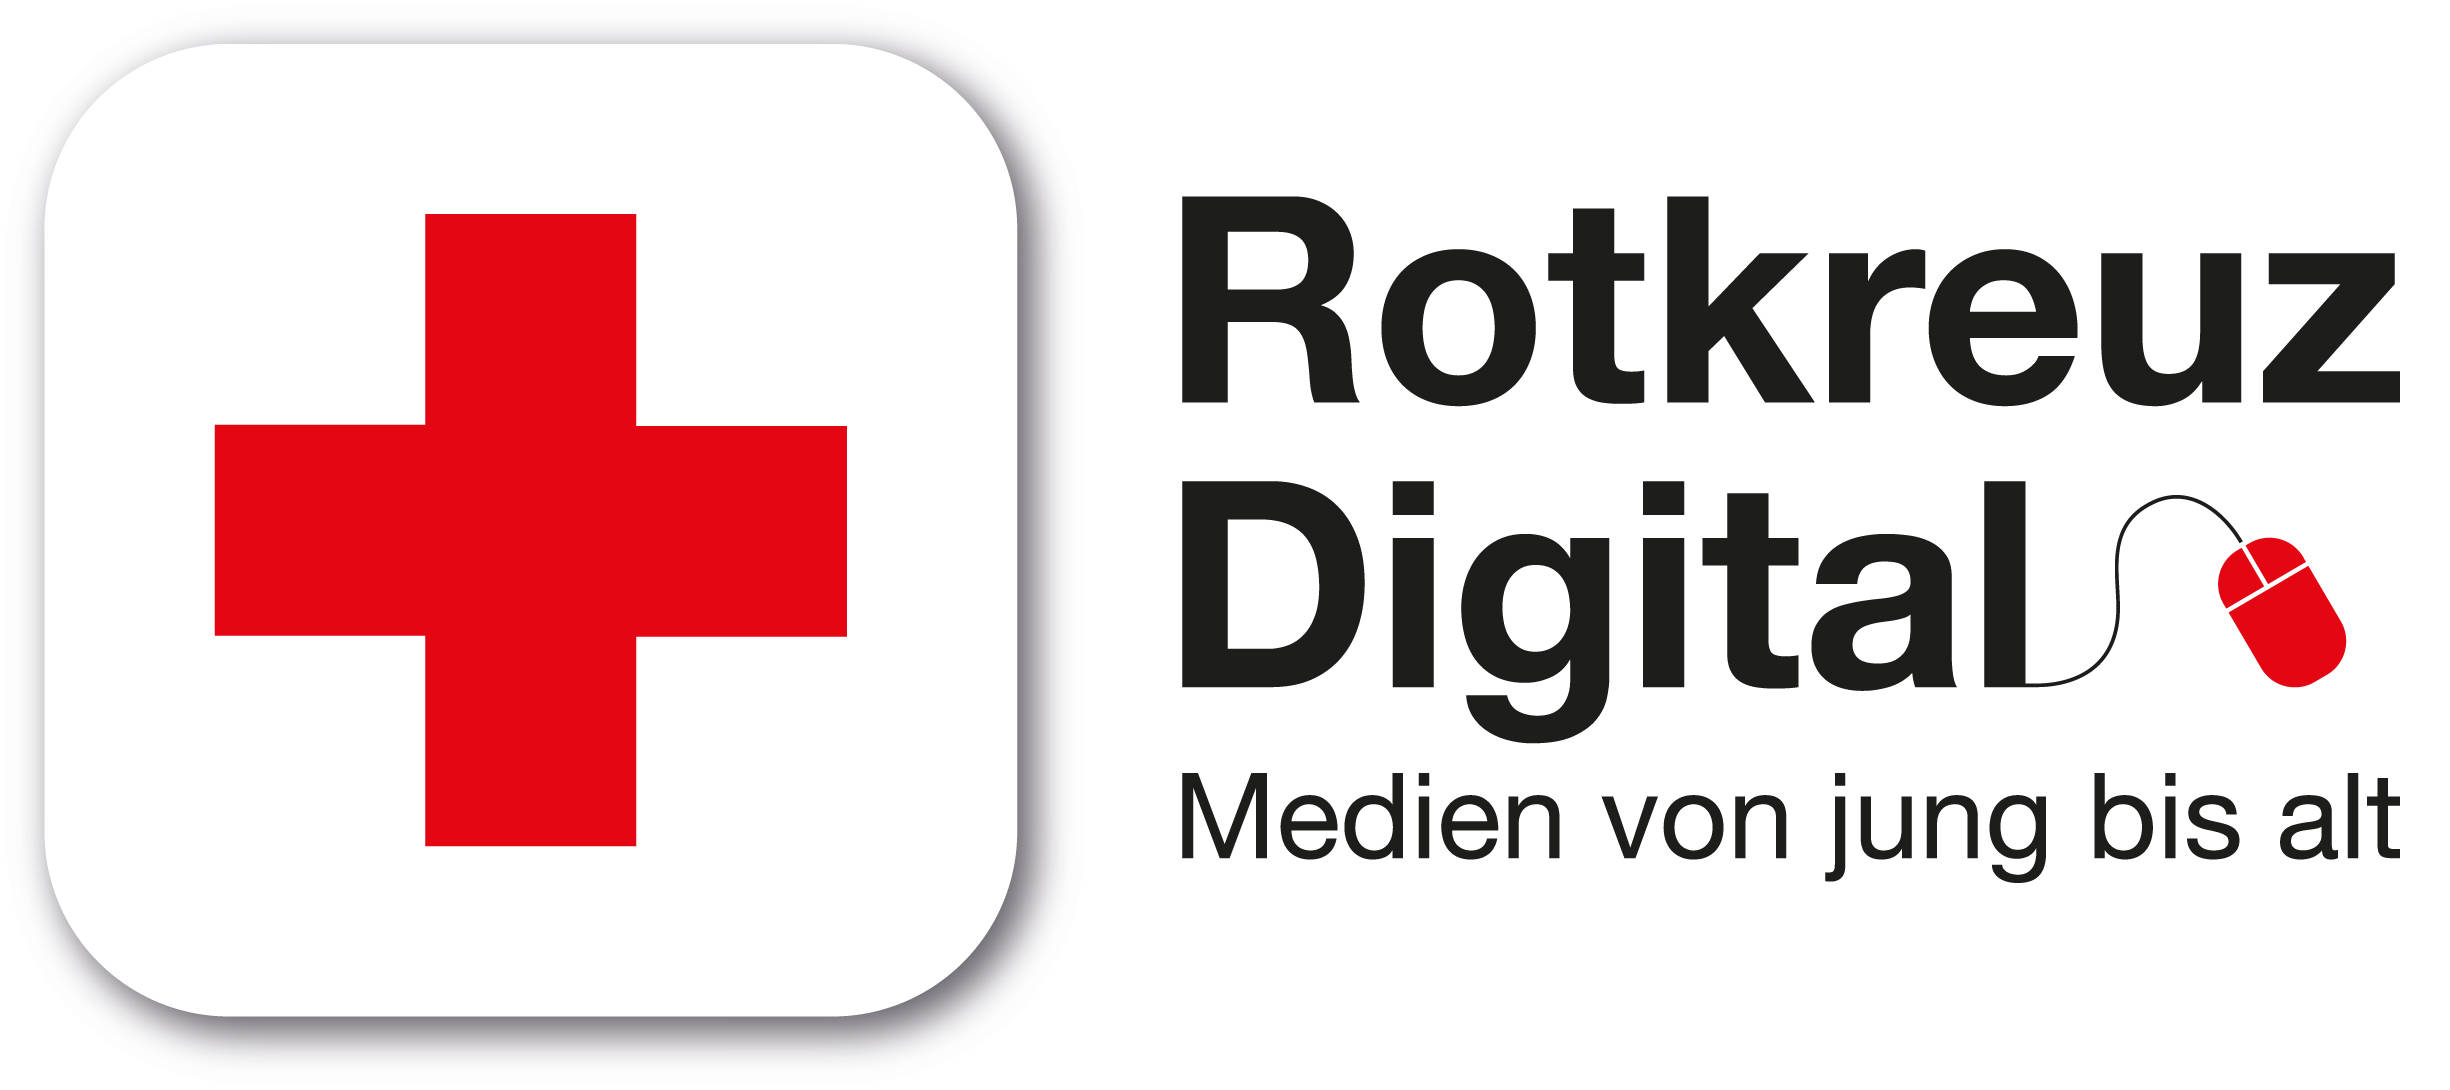 Rotkreuz digital